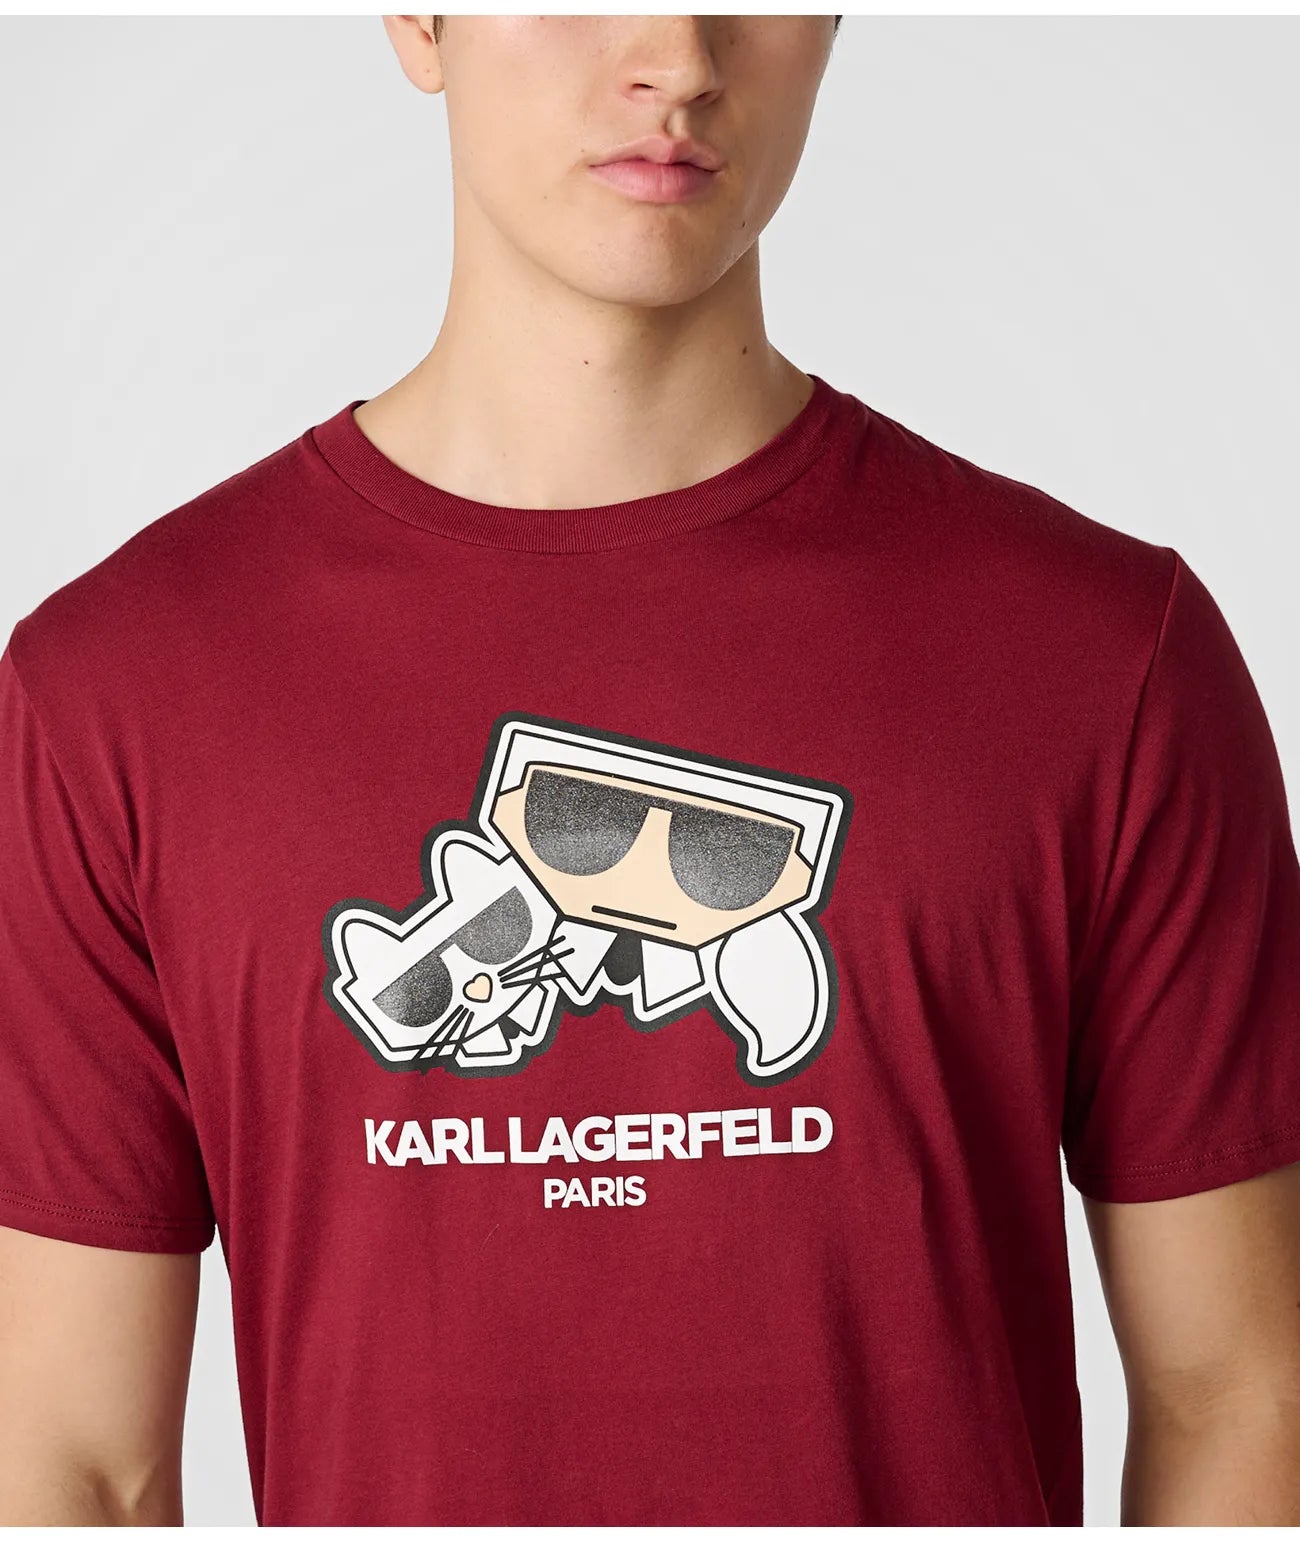 Camiseta Karl Lagerfeld Wine